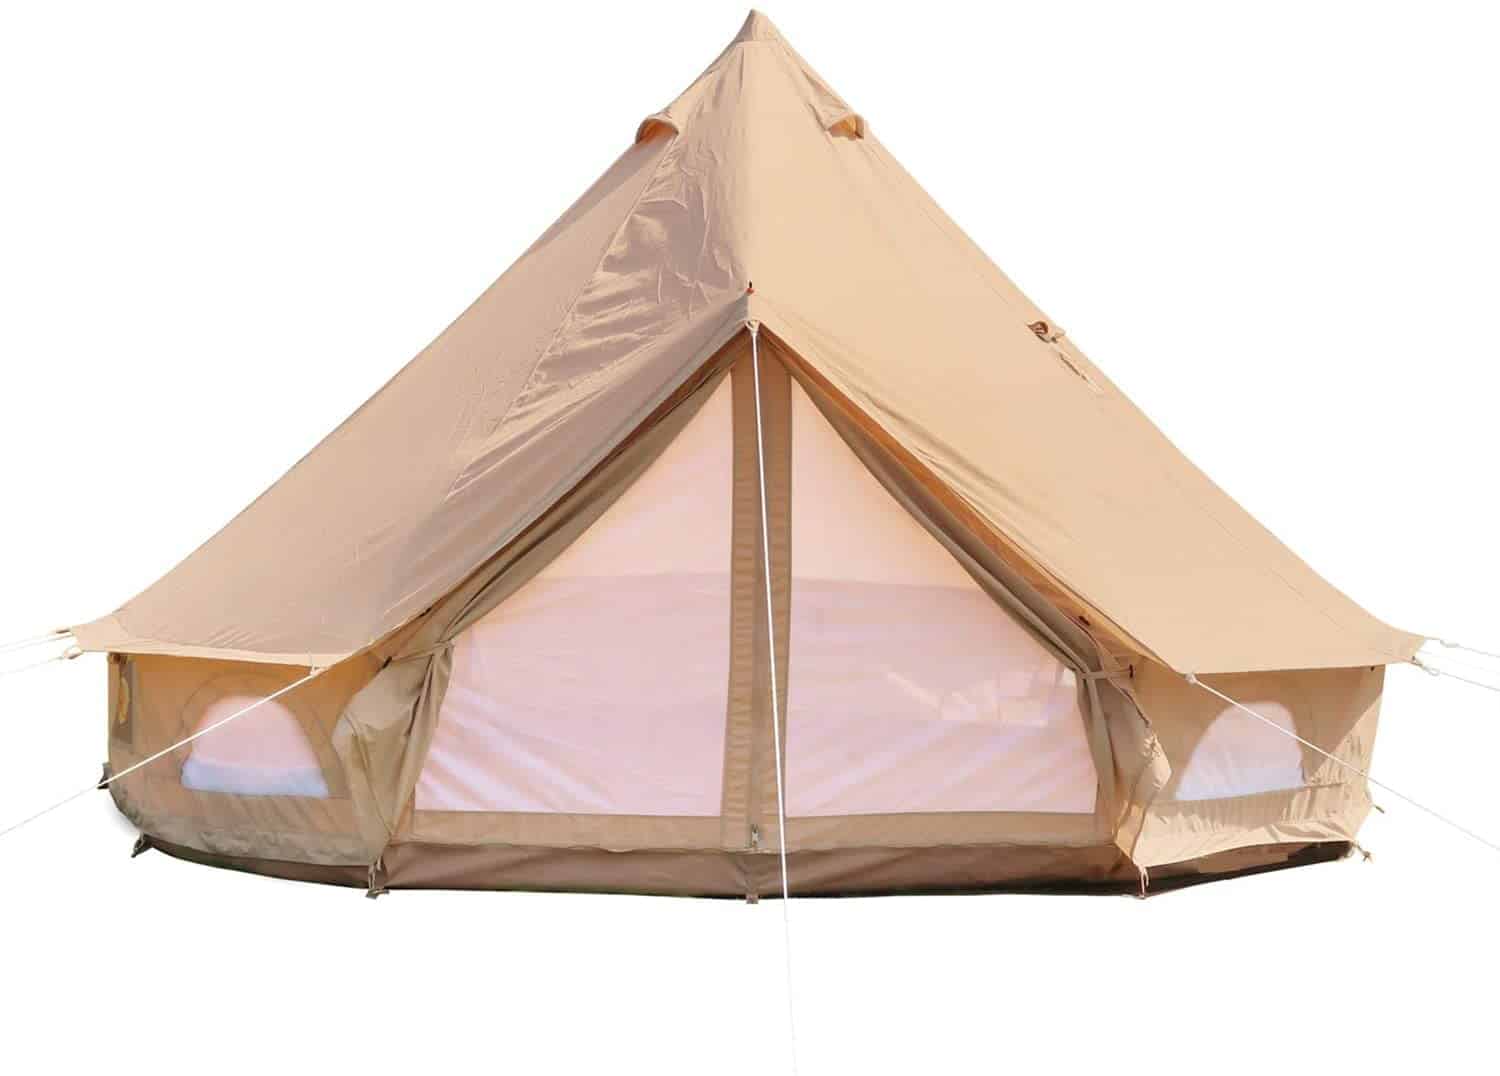  DANCHEL OUTDOOR Cotton Canvas Yurt Tent